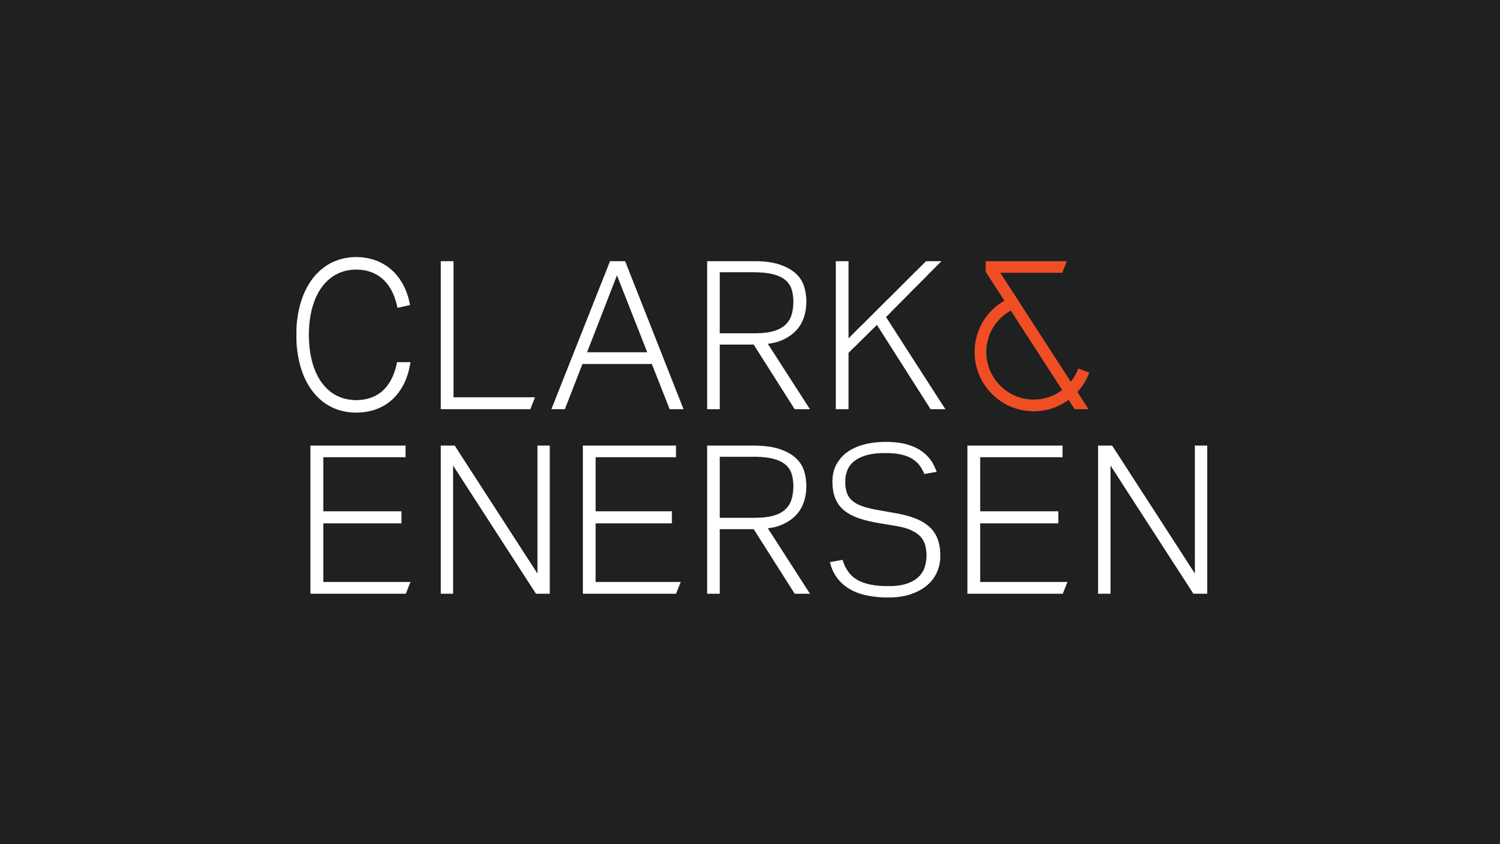 Clark & Enersen's new logo